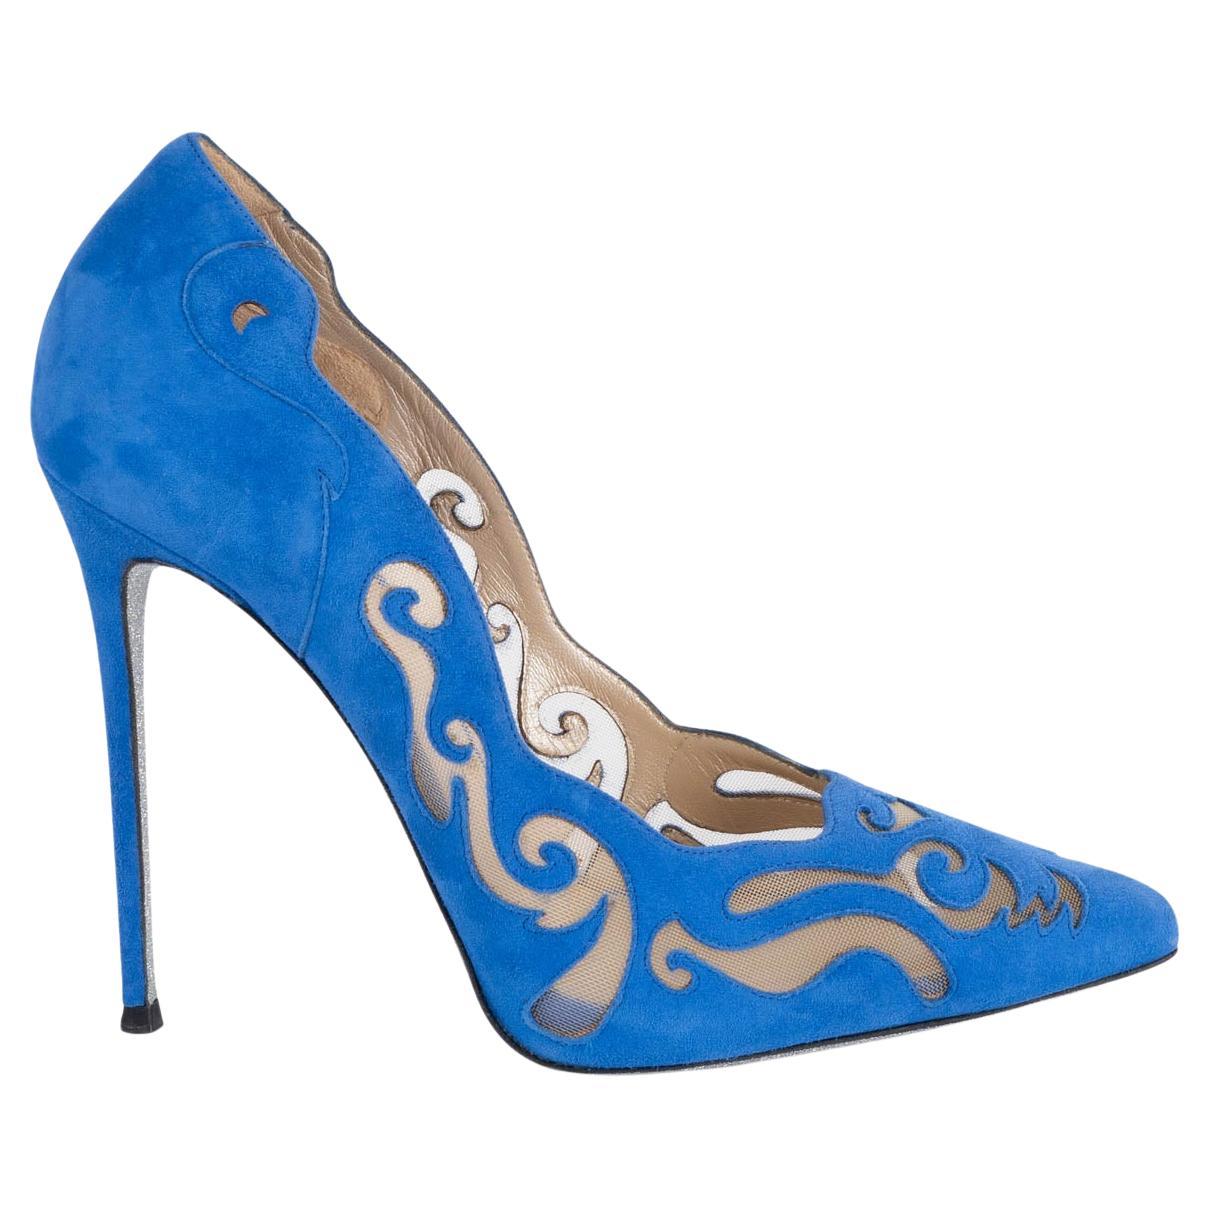 RENE CAOVILLA cobalt blue suede ILLUSION LASER-CUT Pumps Shoes 38.5